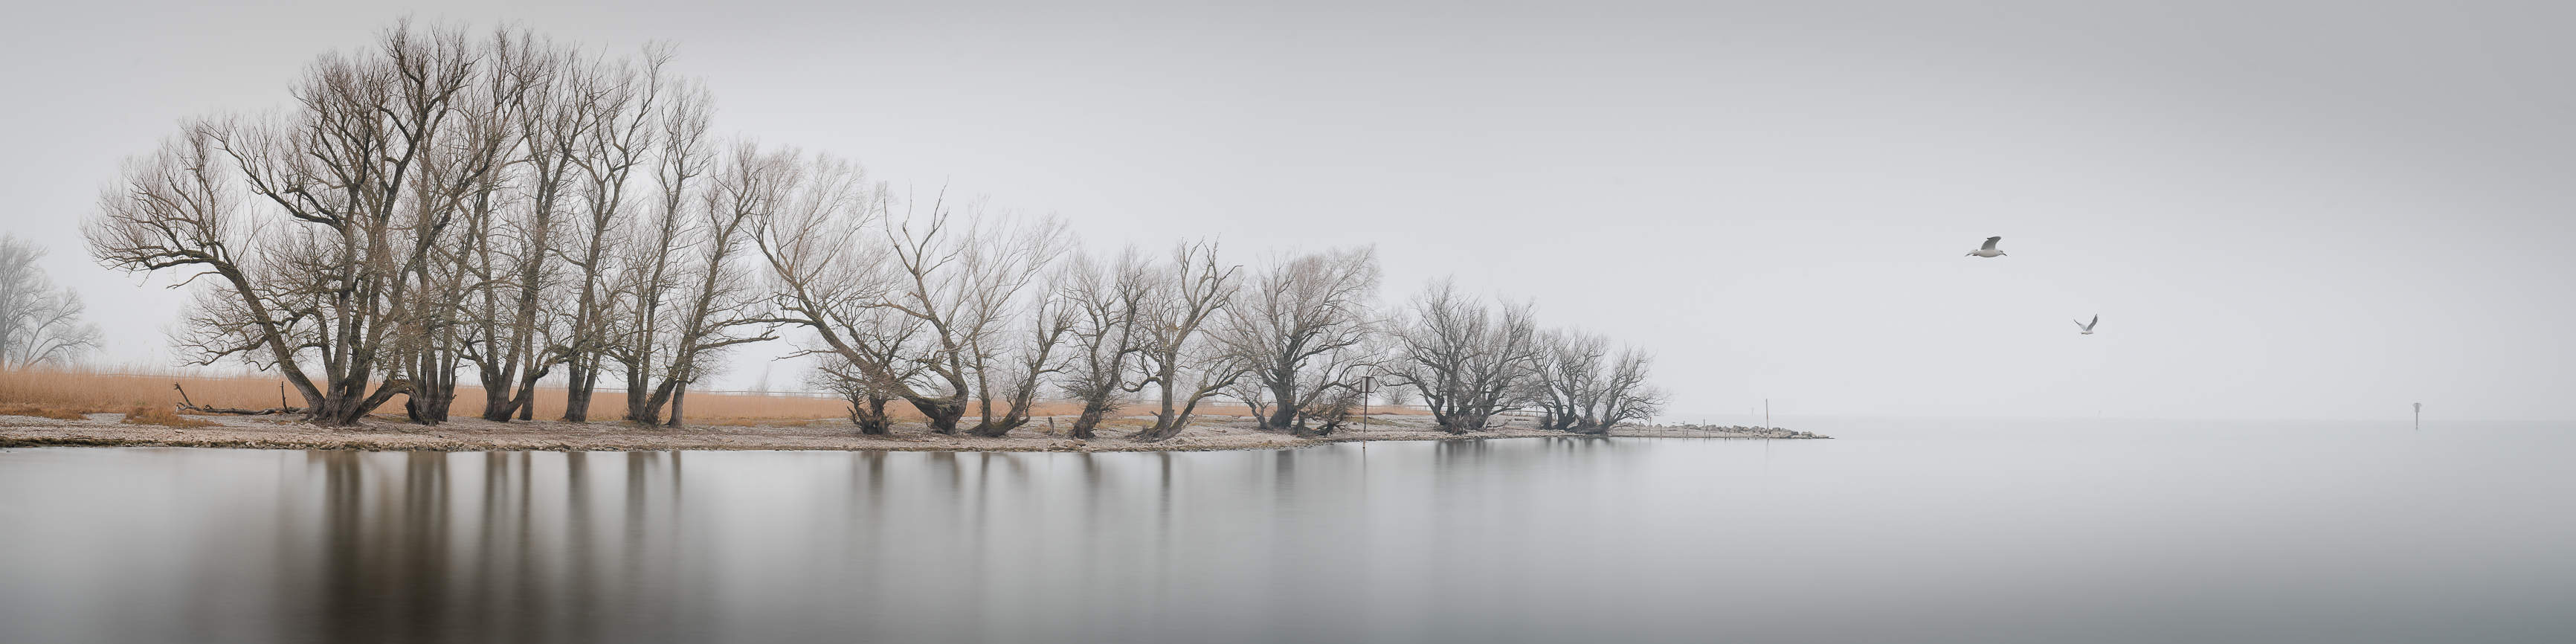 Uferweiden am Bodensee bei mystischer Nebelstimmung. Pano 4:1